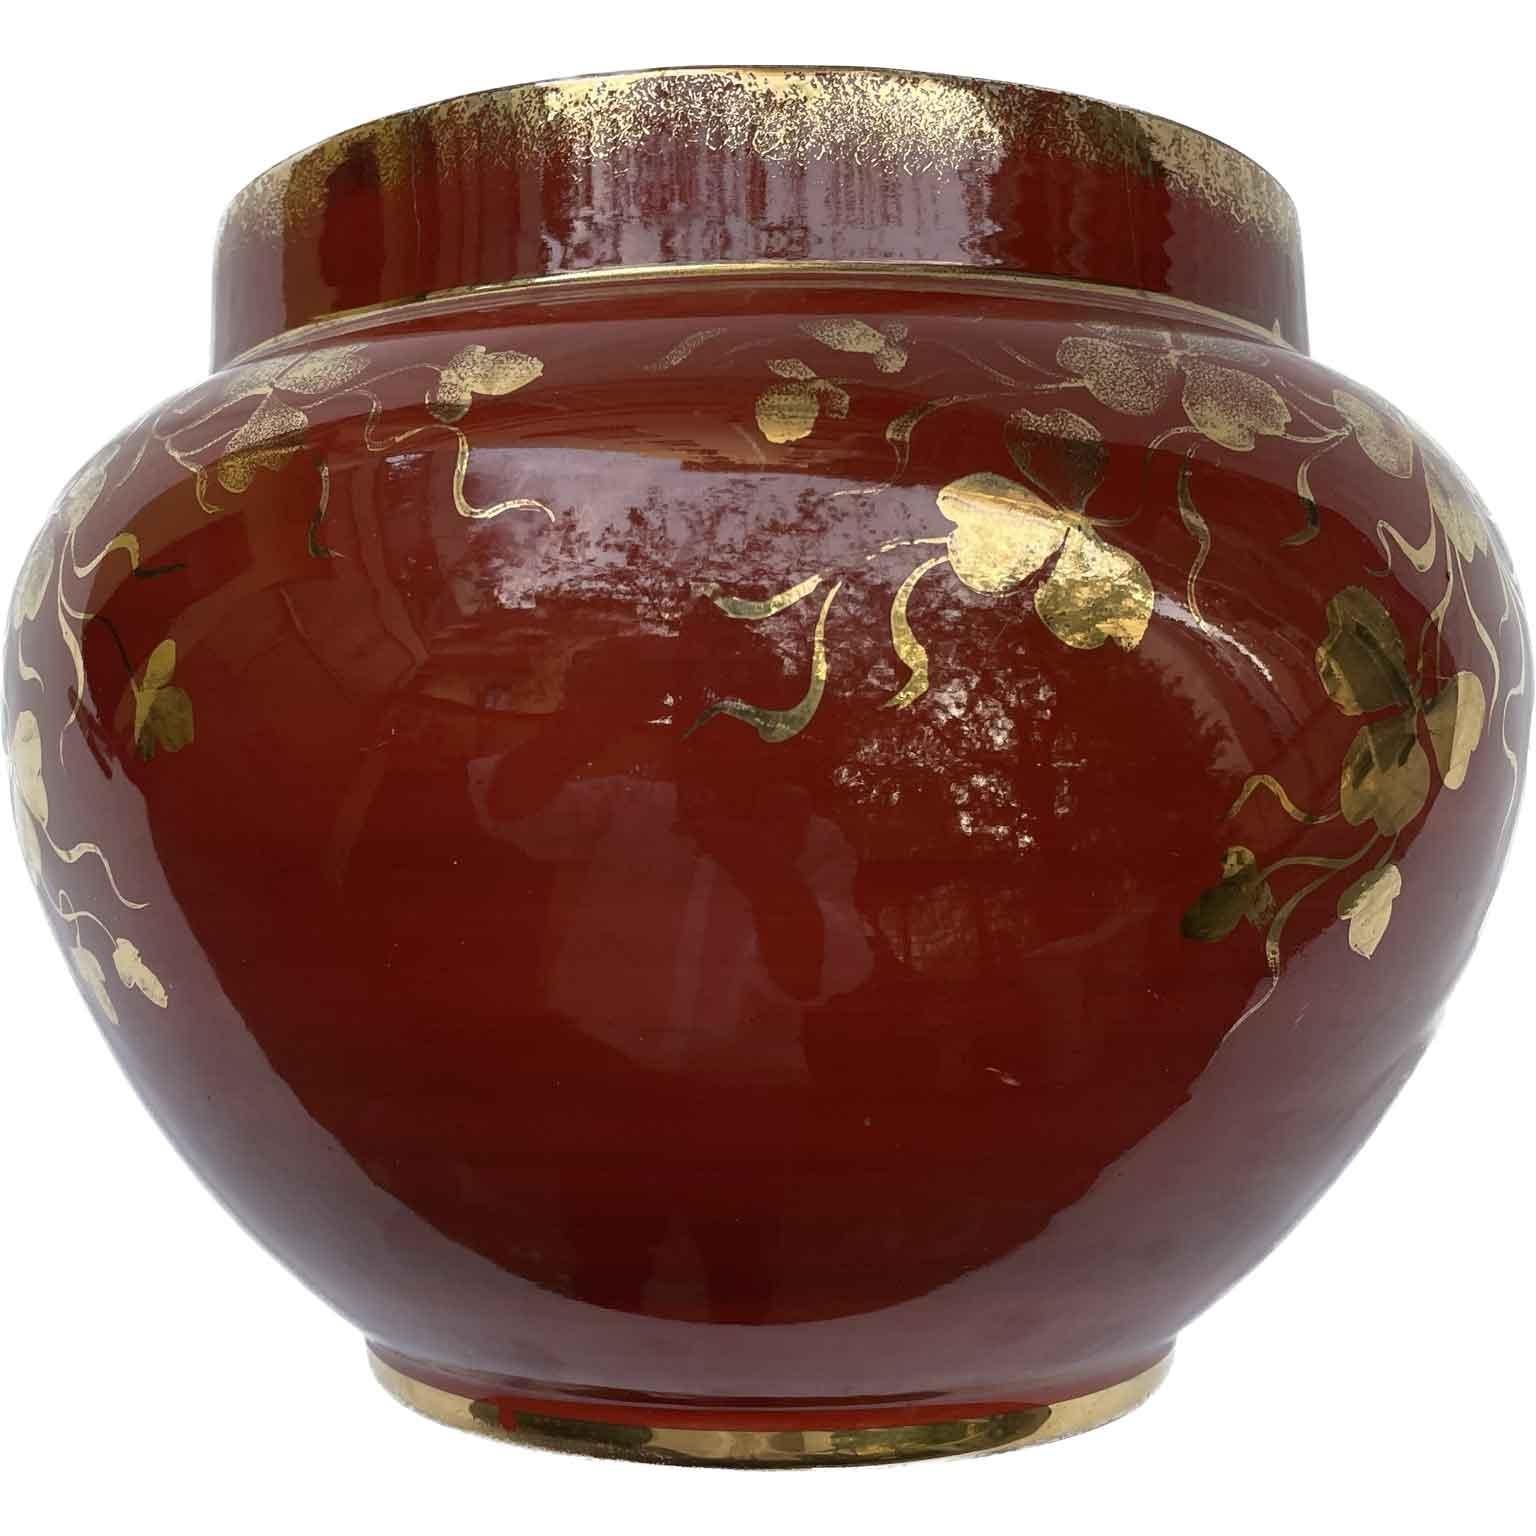 Art Deco Guido Andlovitz Red and Gold Deco Vase 1930s Italian Ceramic Society Laveno For Sale